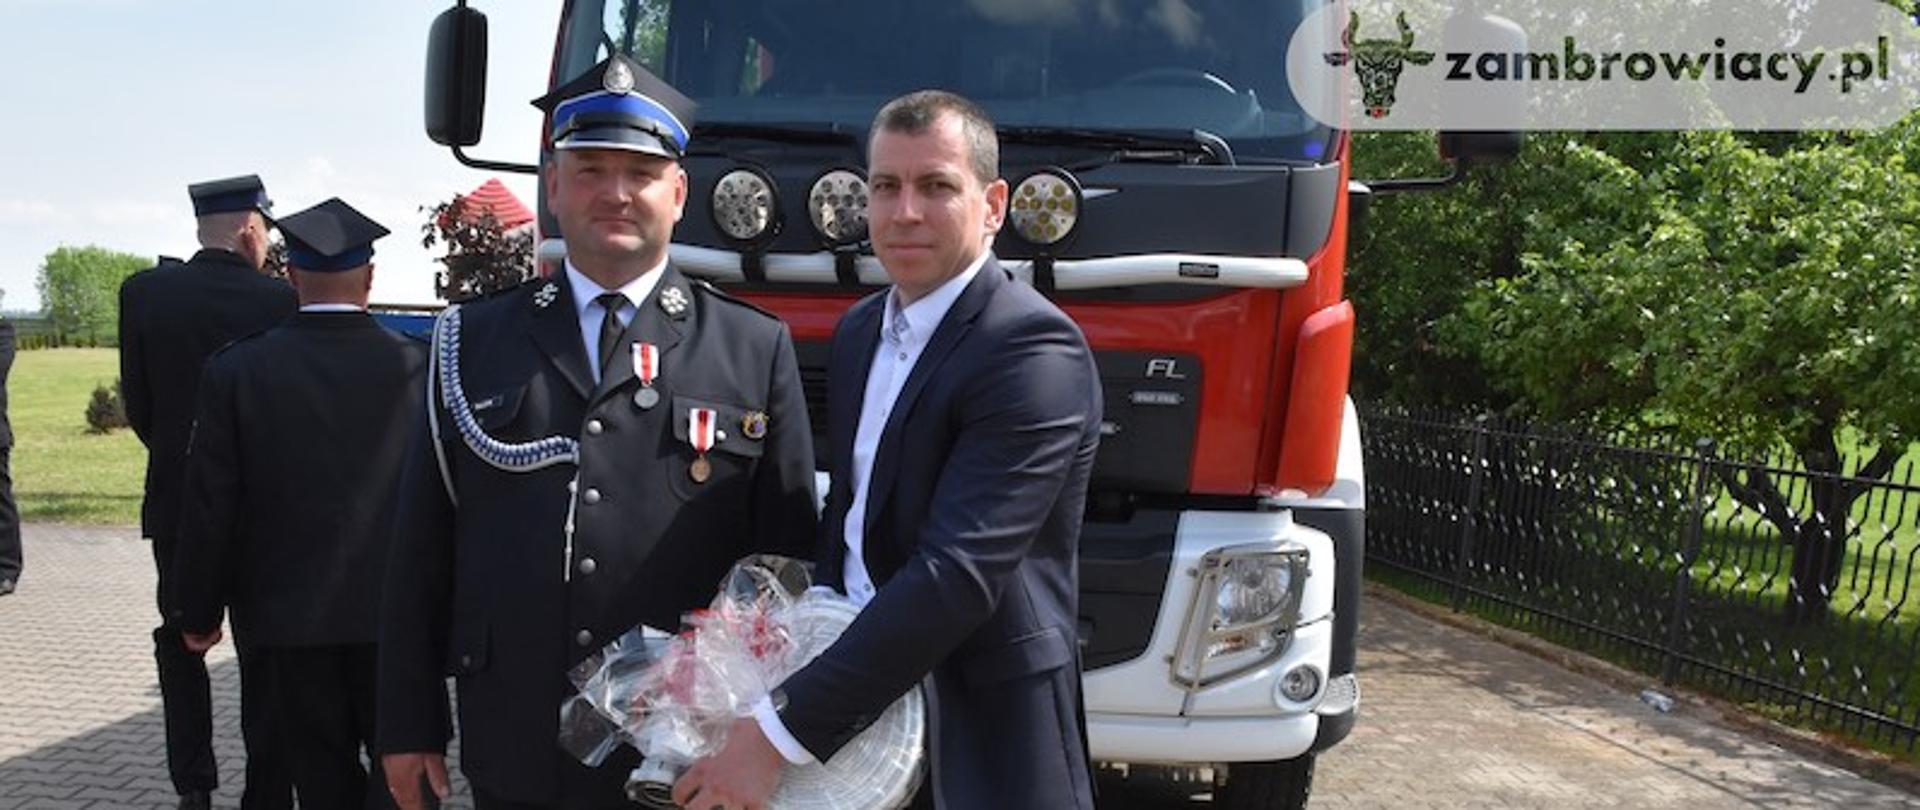 Radny Powiatu Zambrowskiego Sławomir Worosilaka przekazuje na ręce prezesa OSP Pechratka Polska strażacki wąż, w tle znajduje się czerwony wóz strażacki